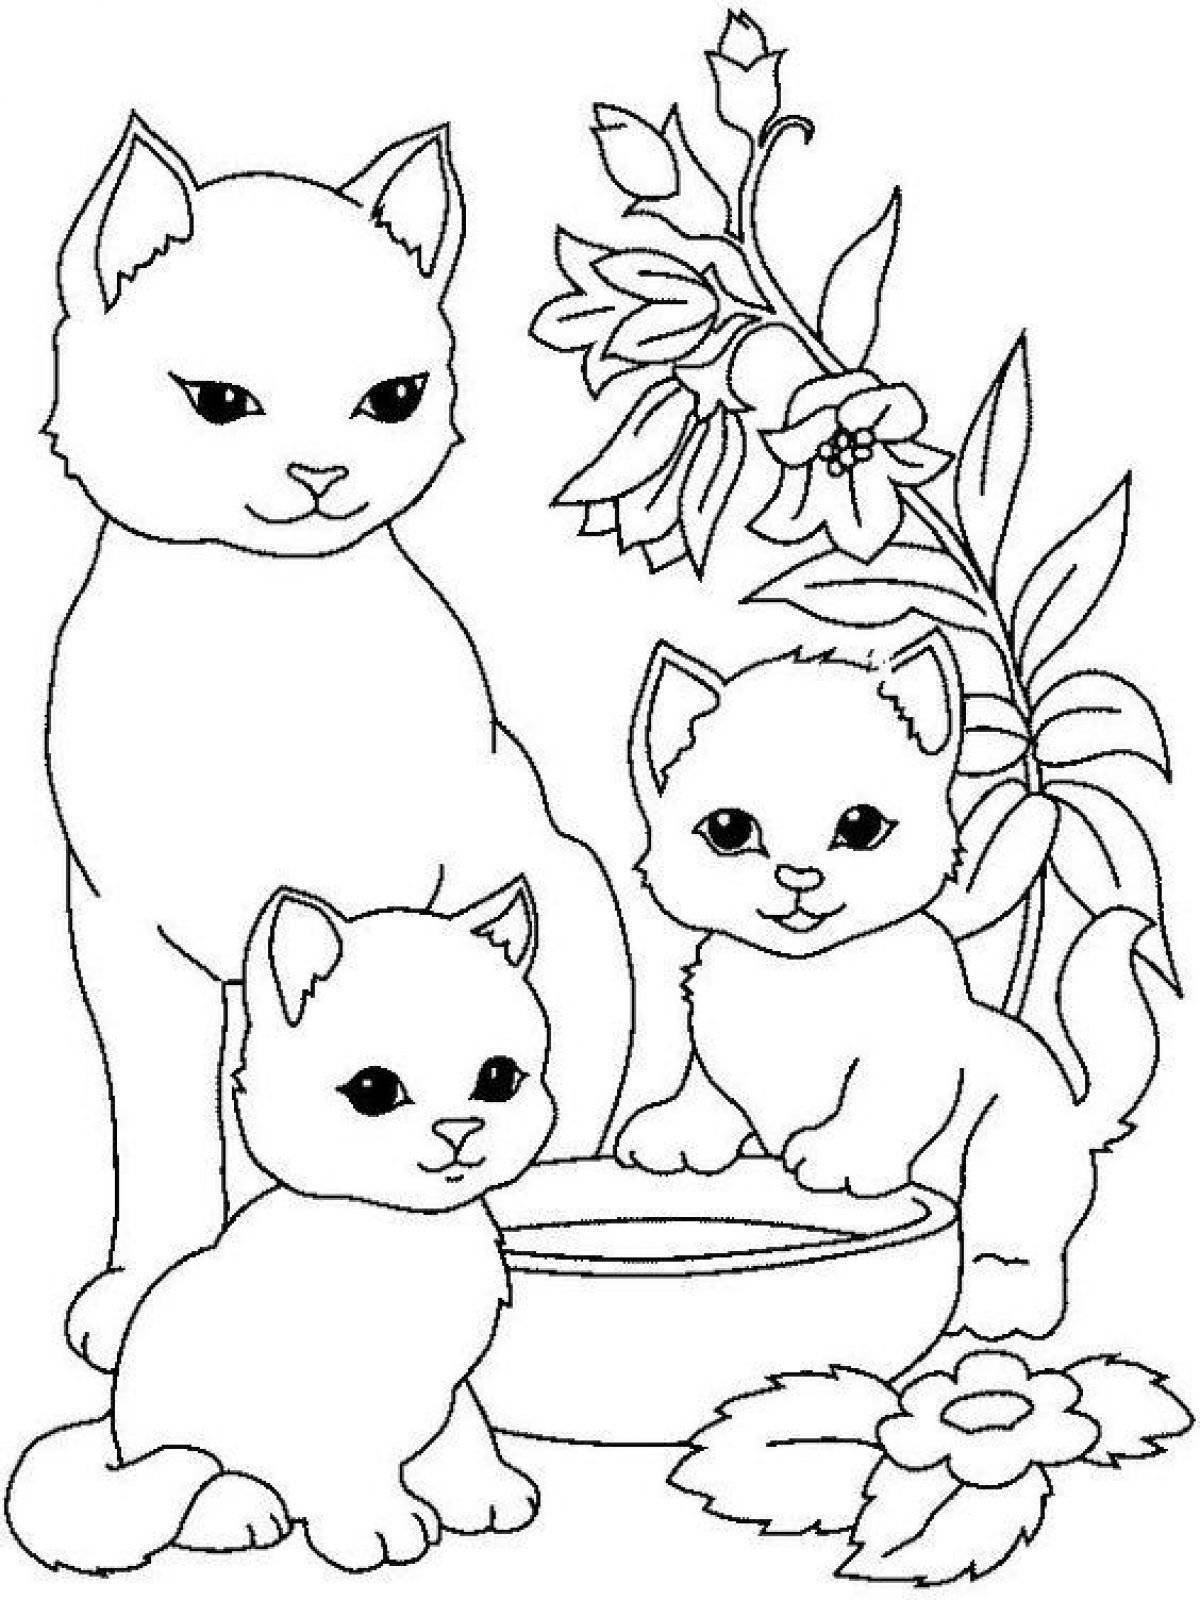 Веселая раскраска кошка для детей 5-6 лет